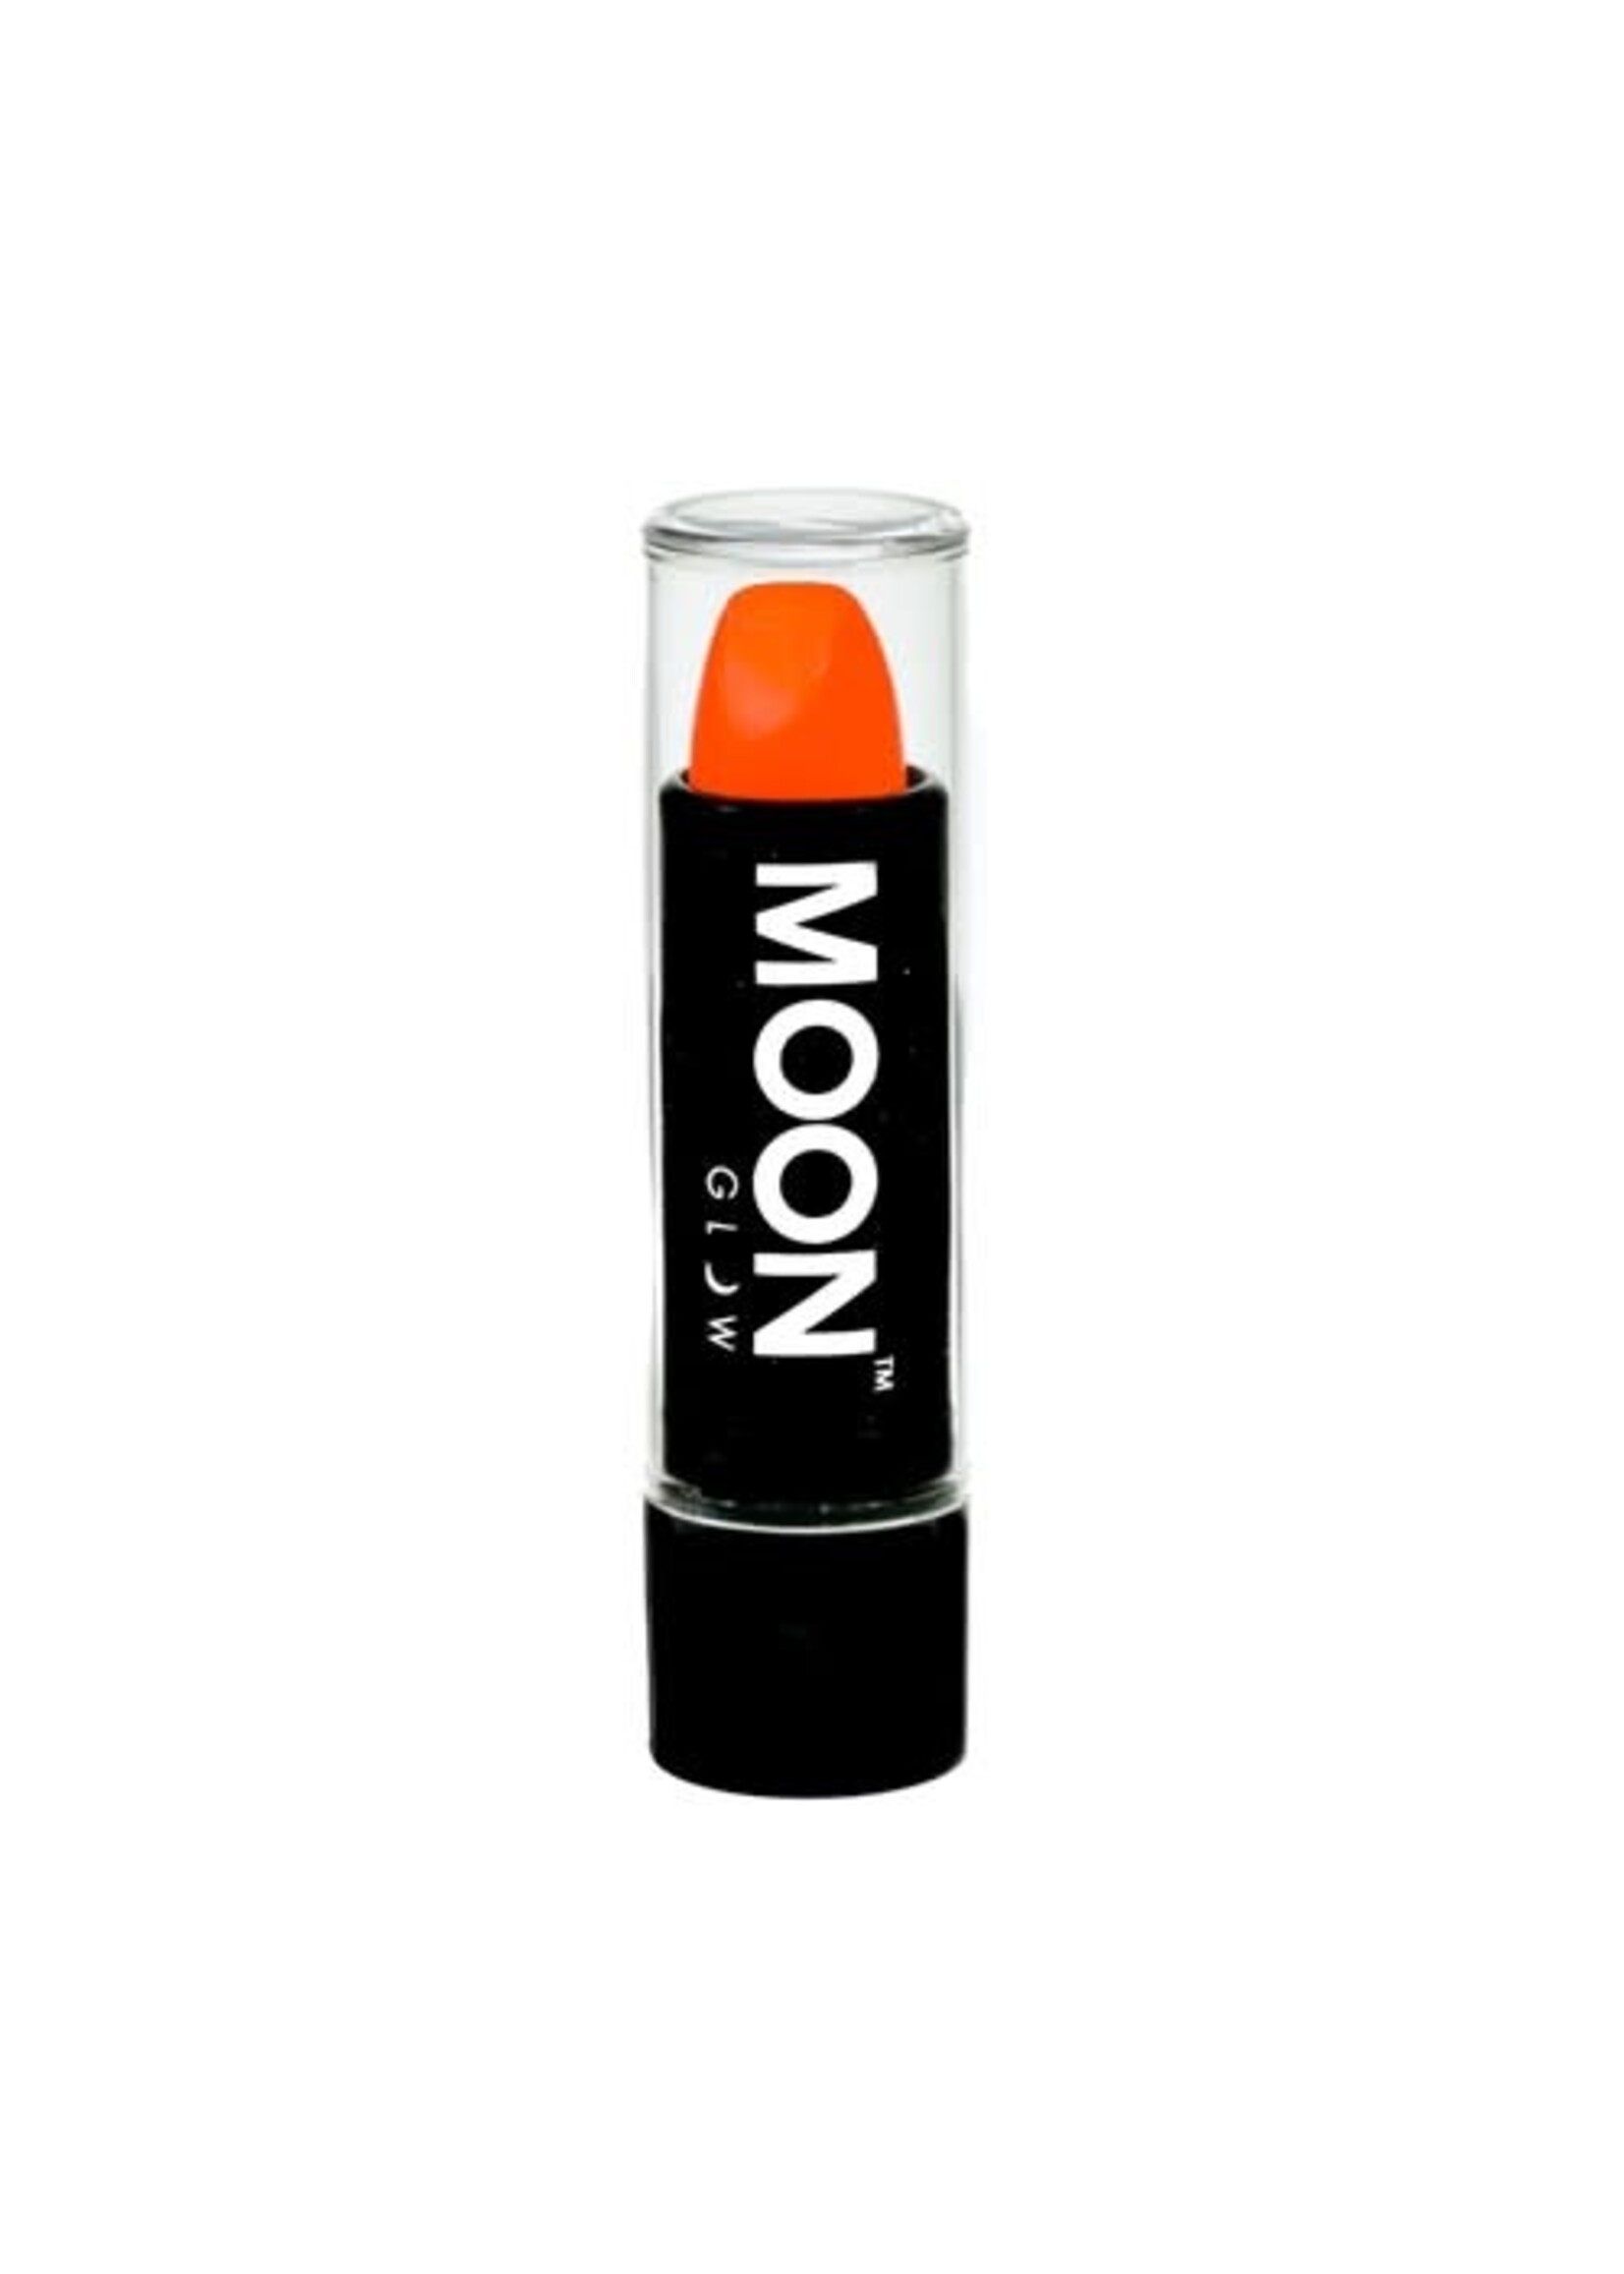 Feestkleding Breda neon lipstick oranje